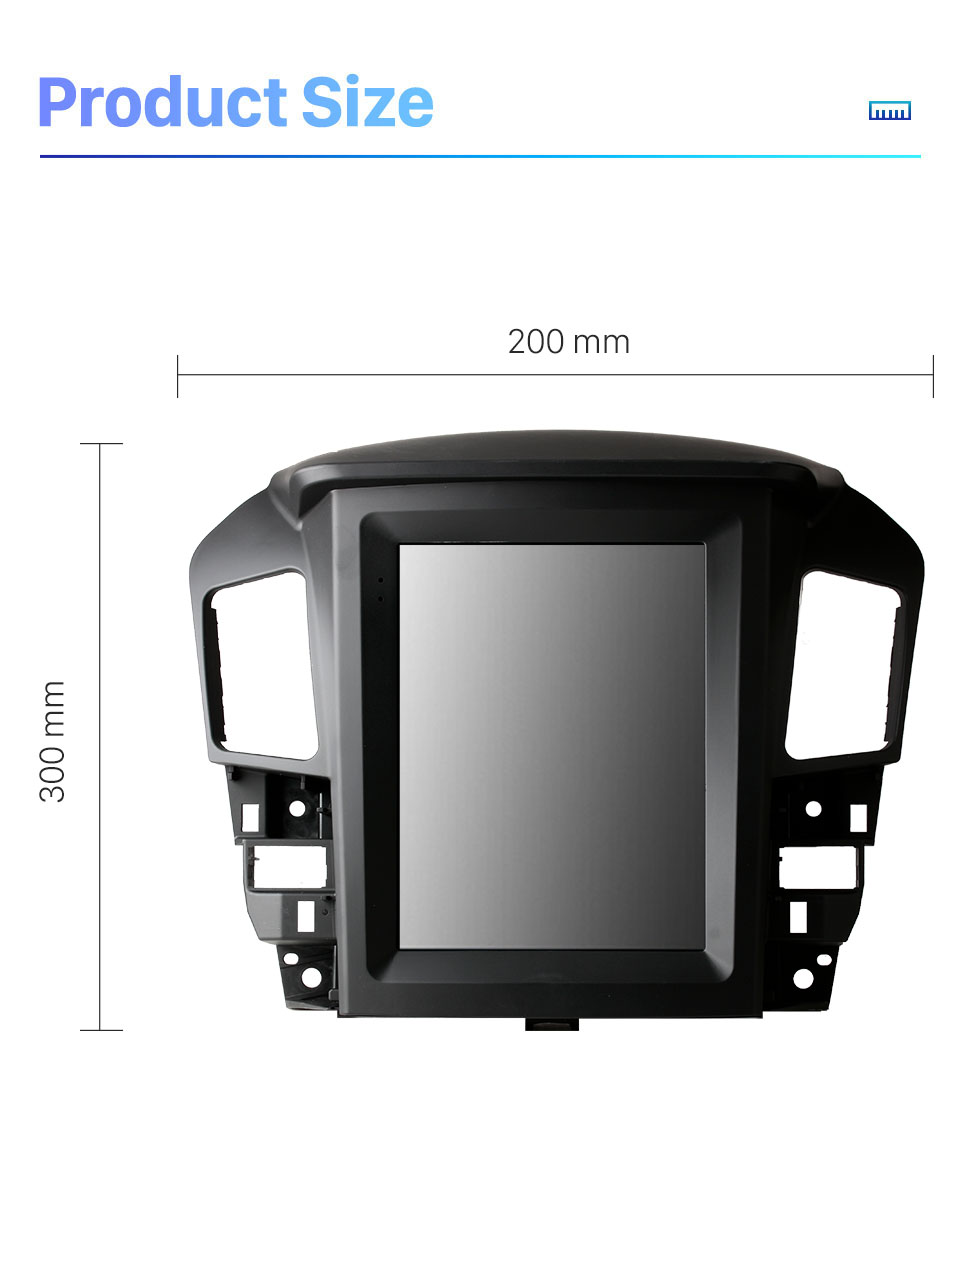 Seicane 9,7-Zoll-HD-Touchscreen für Lexus RX300 RX330 Toyota Harrier 1998 1997-2003 Android 10.0 Autoradio-Autoradio mit Bluetooth-integrierter Carplay-DSP-Unterstützung 360 ° -Kamera-DVR